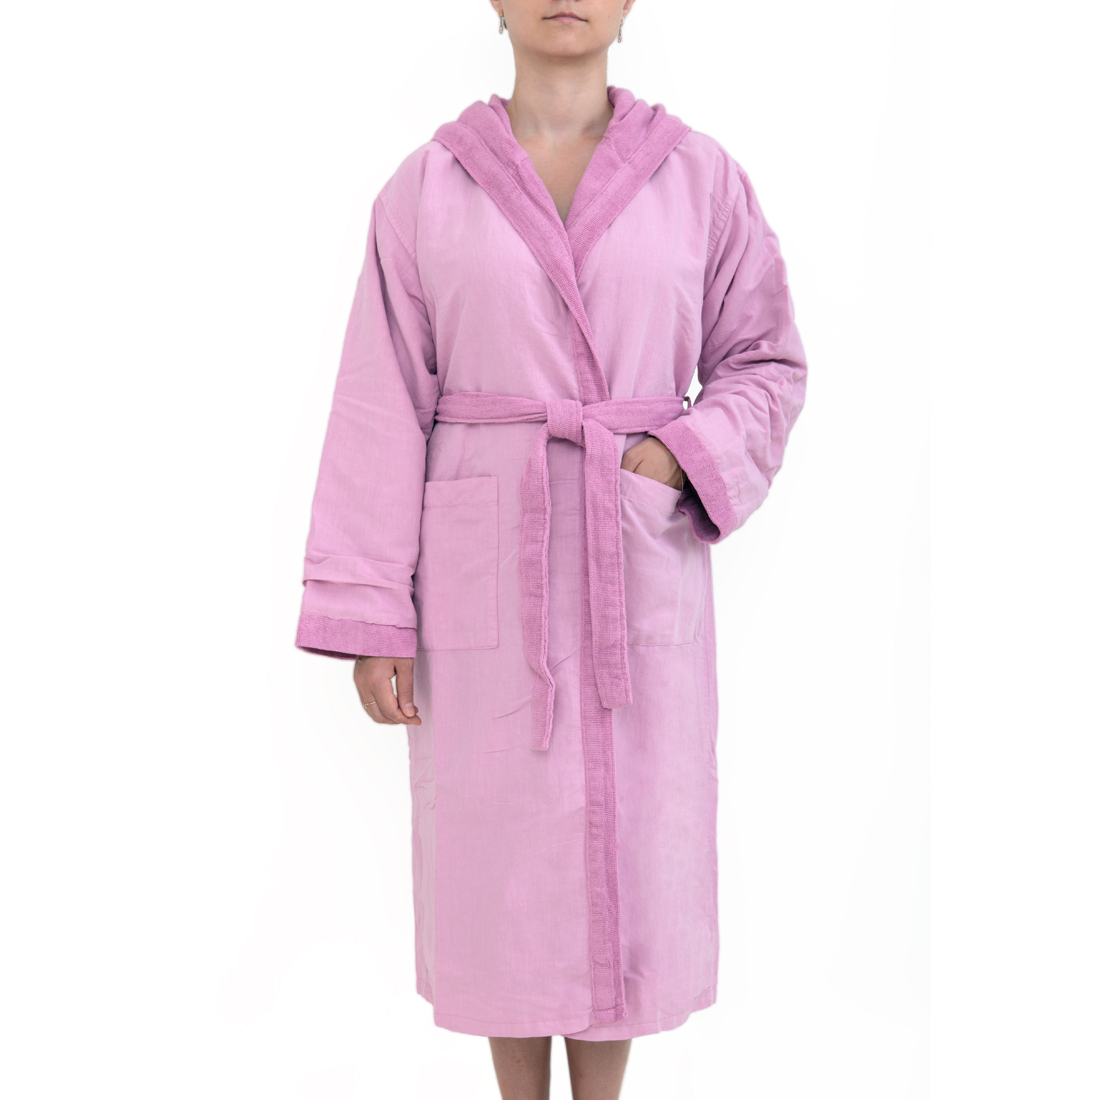 Банный халат Senses цвет: сиреневый (XL)